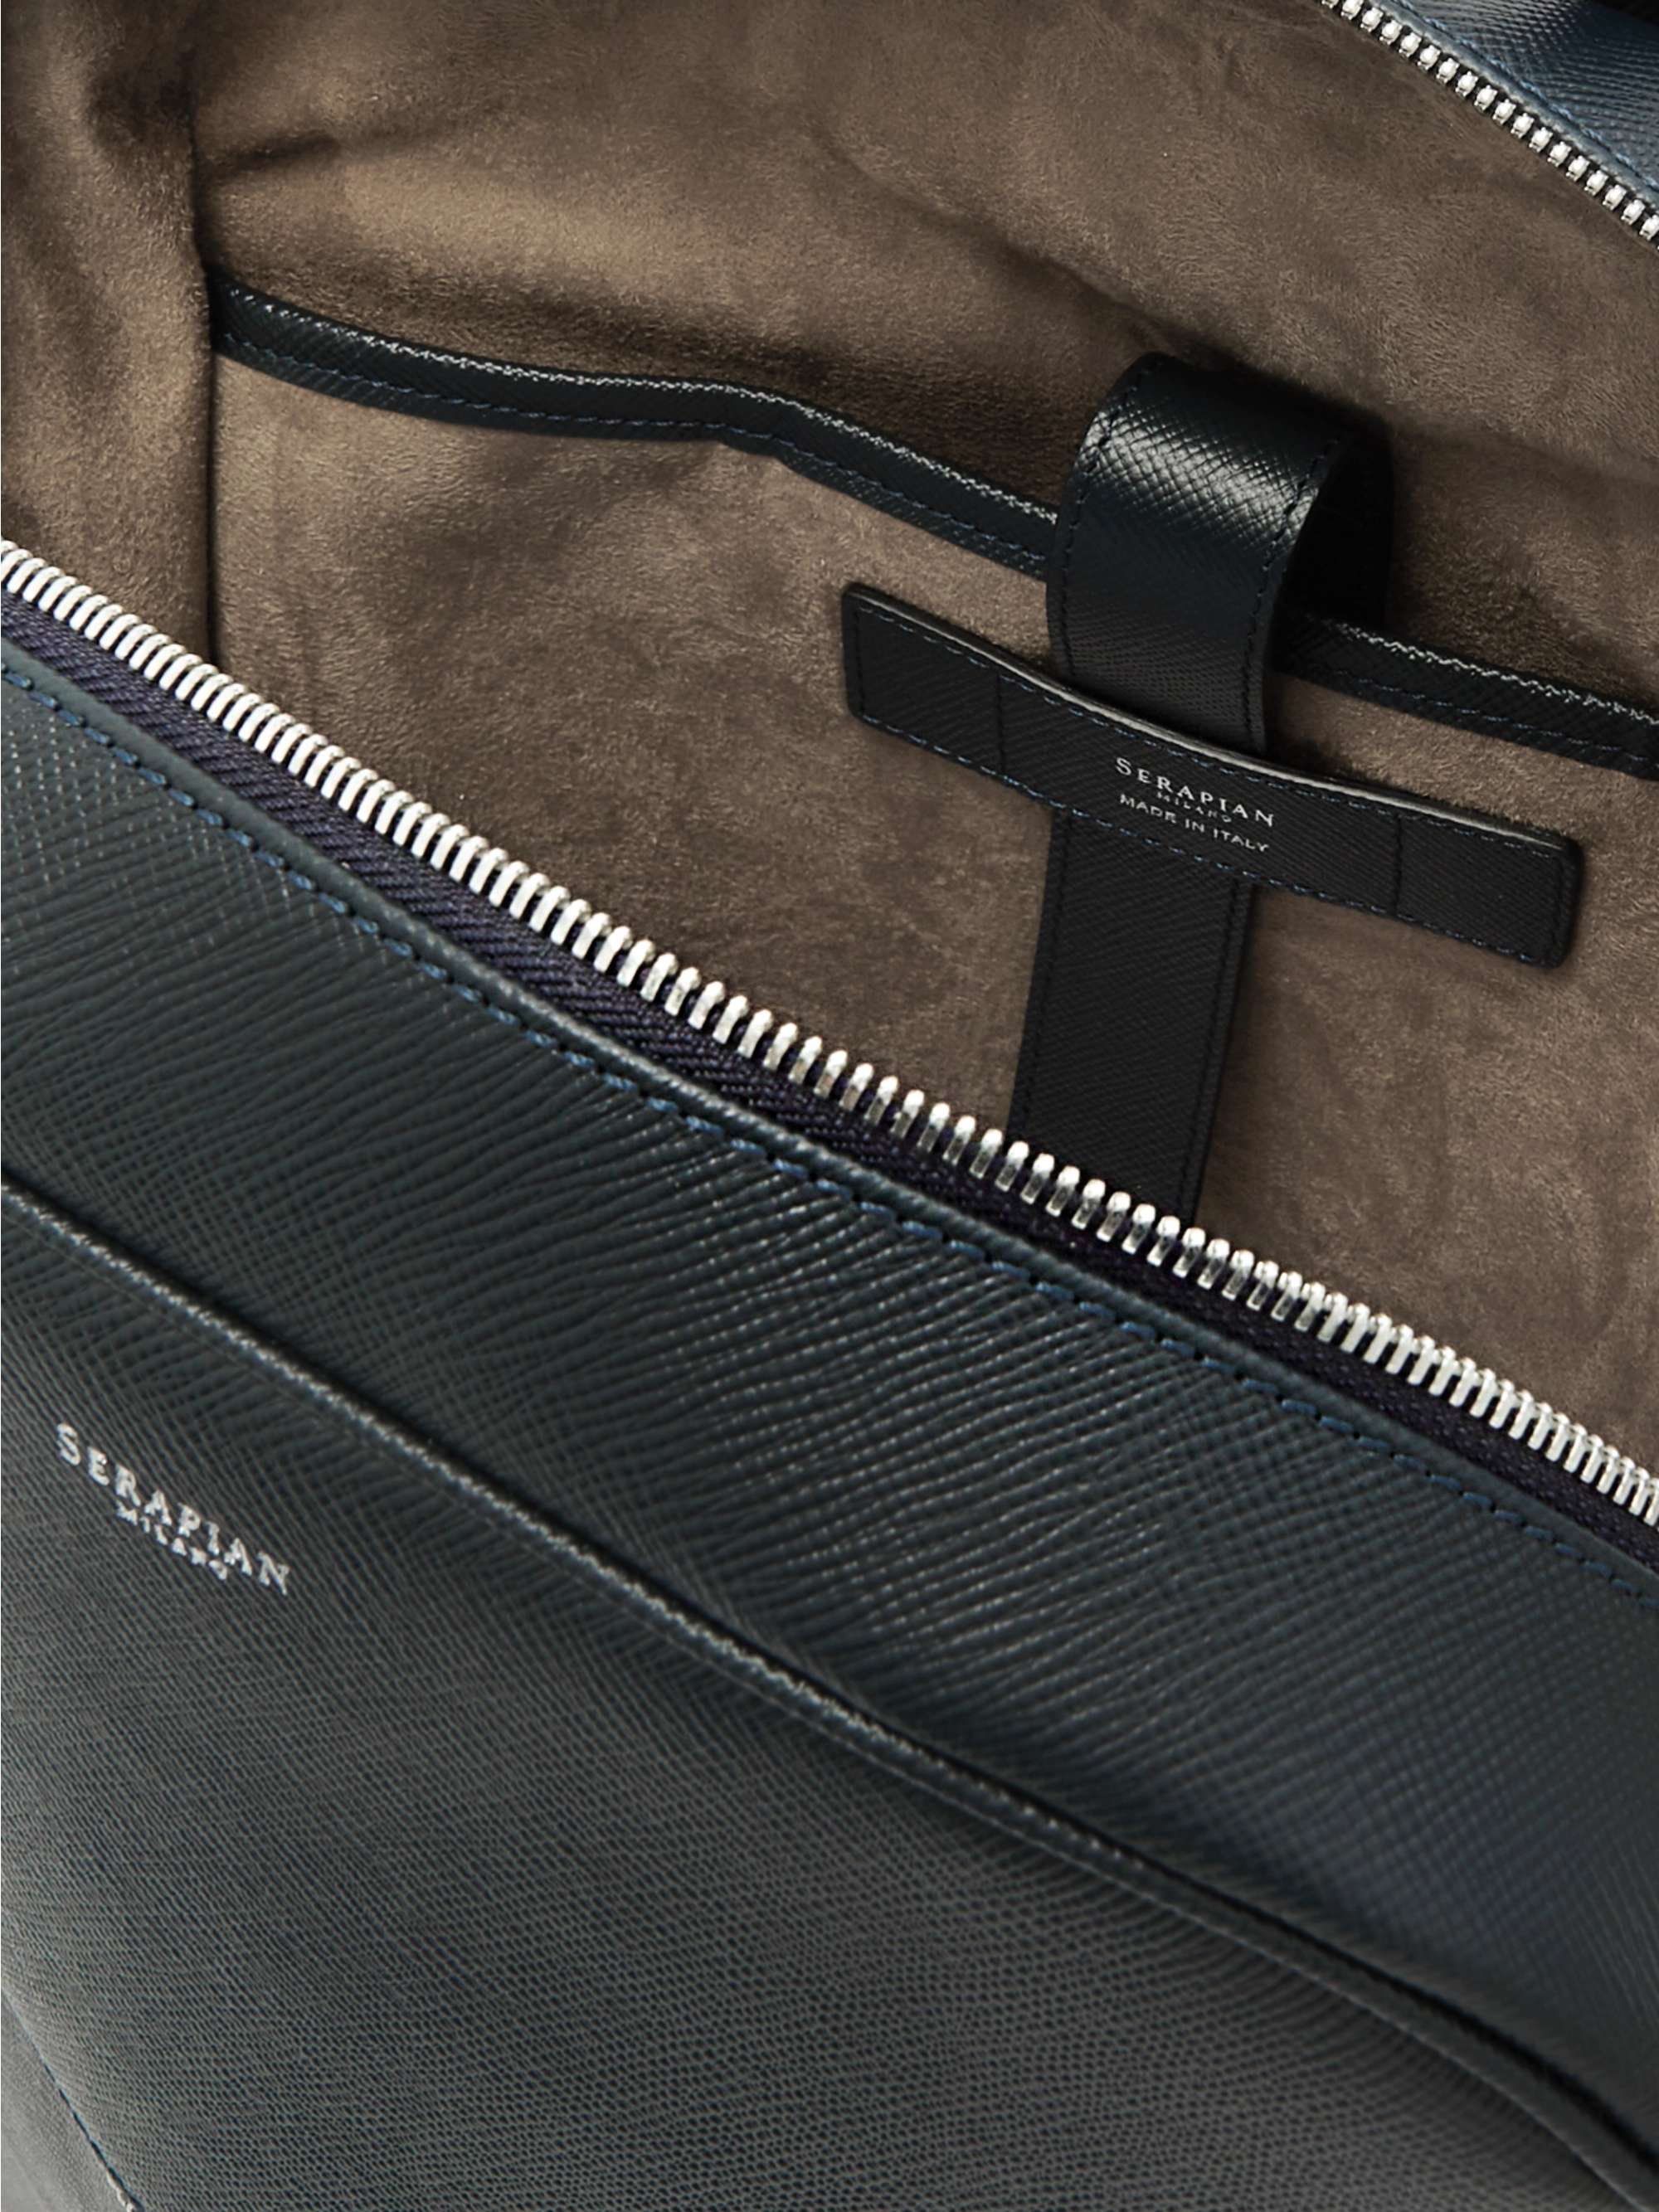 SERAPIAN Cross-Grain Leather Backpack